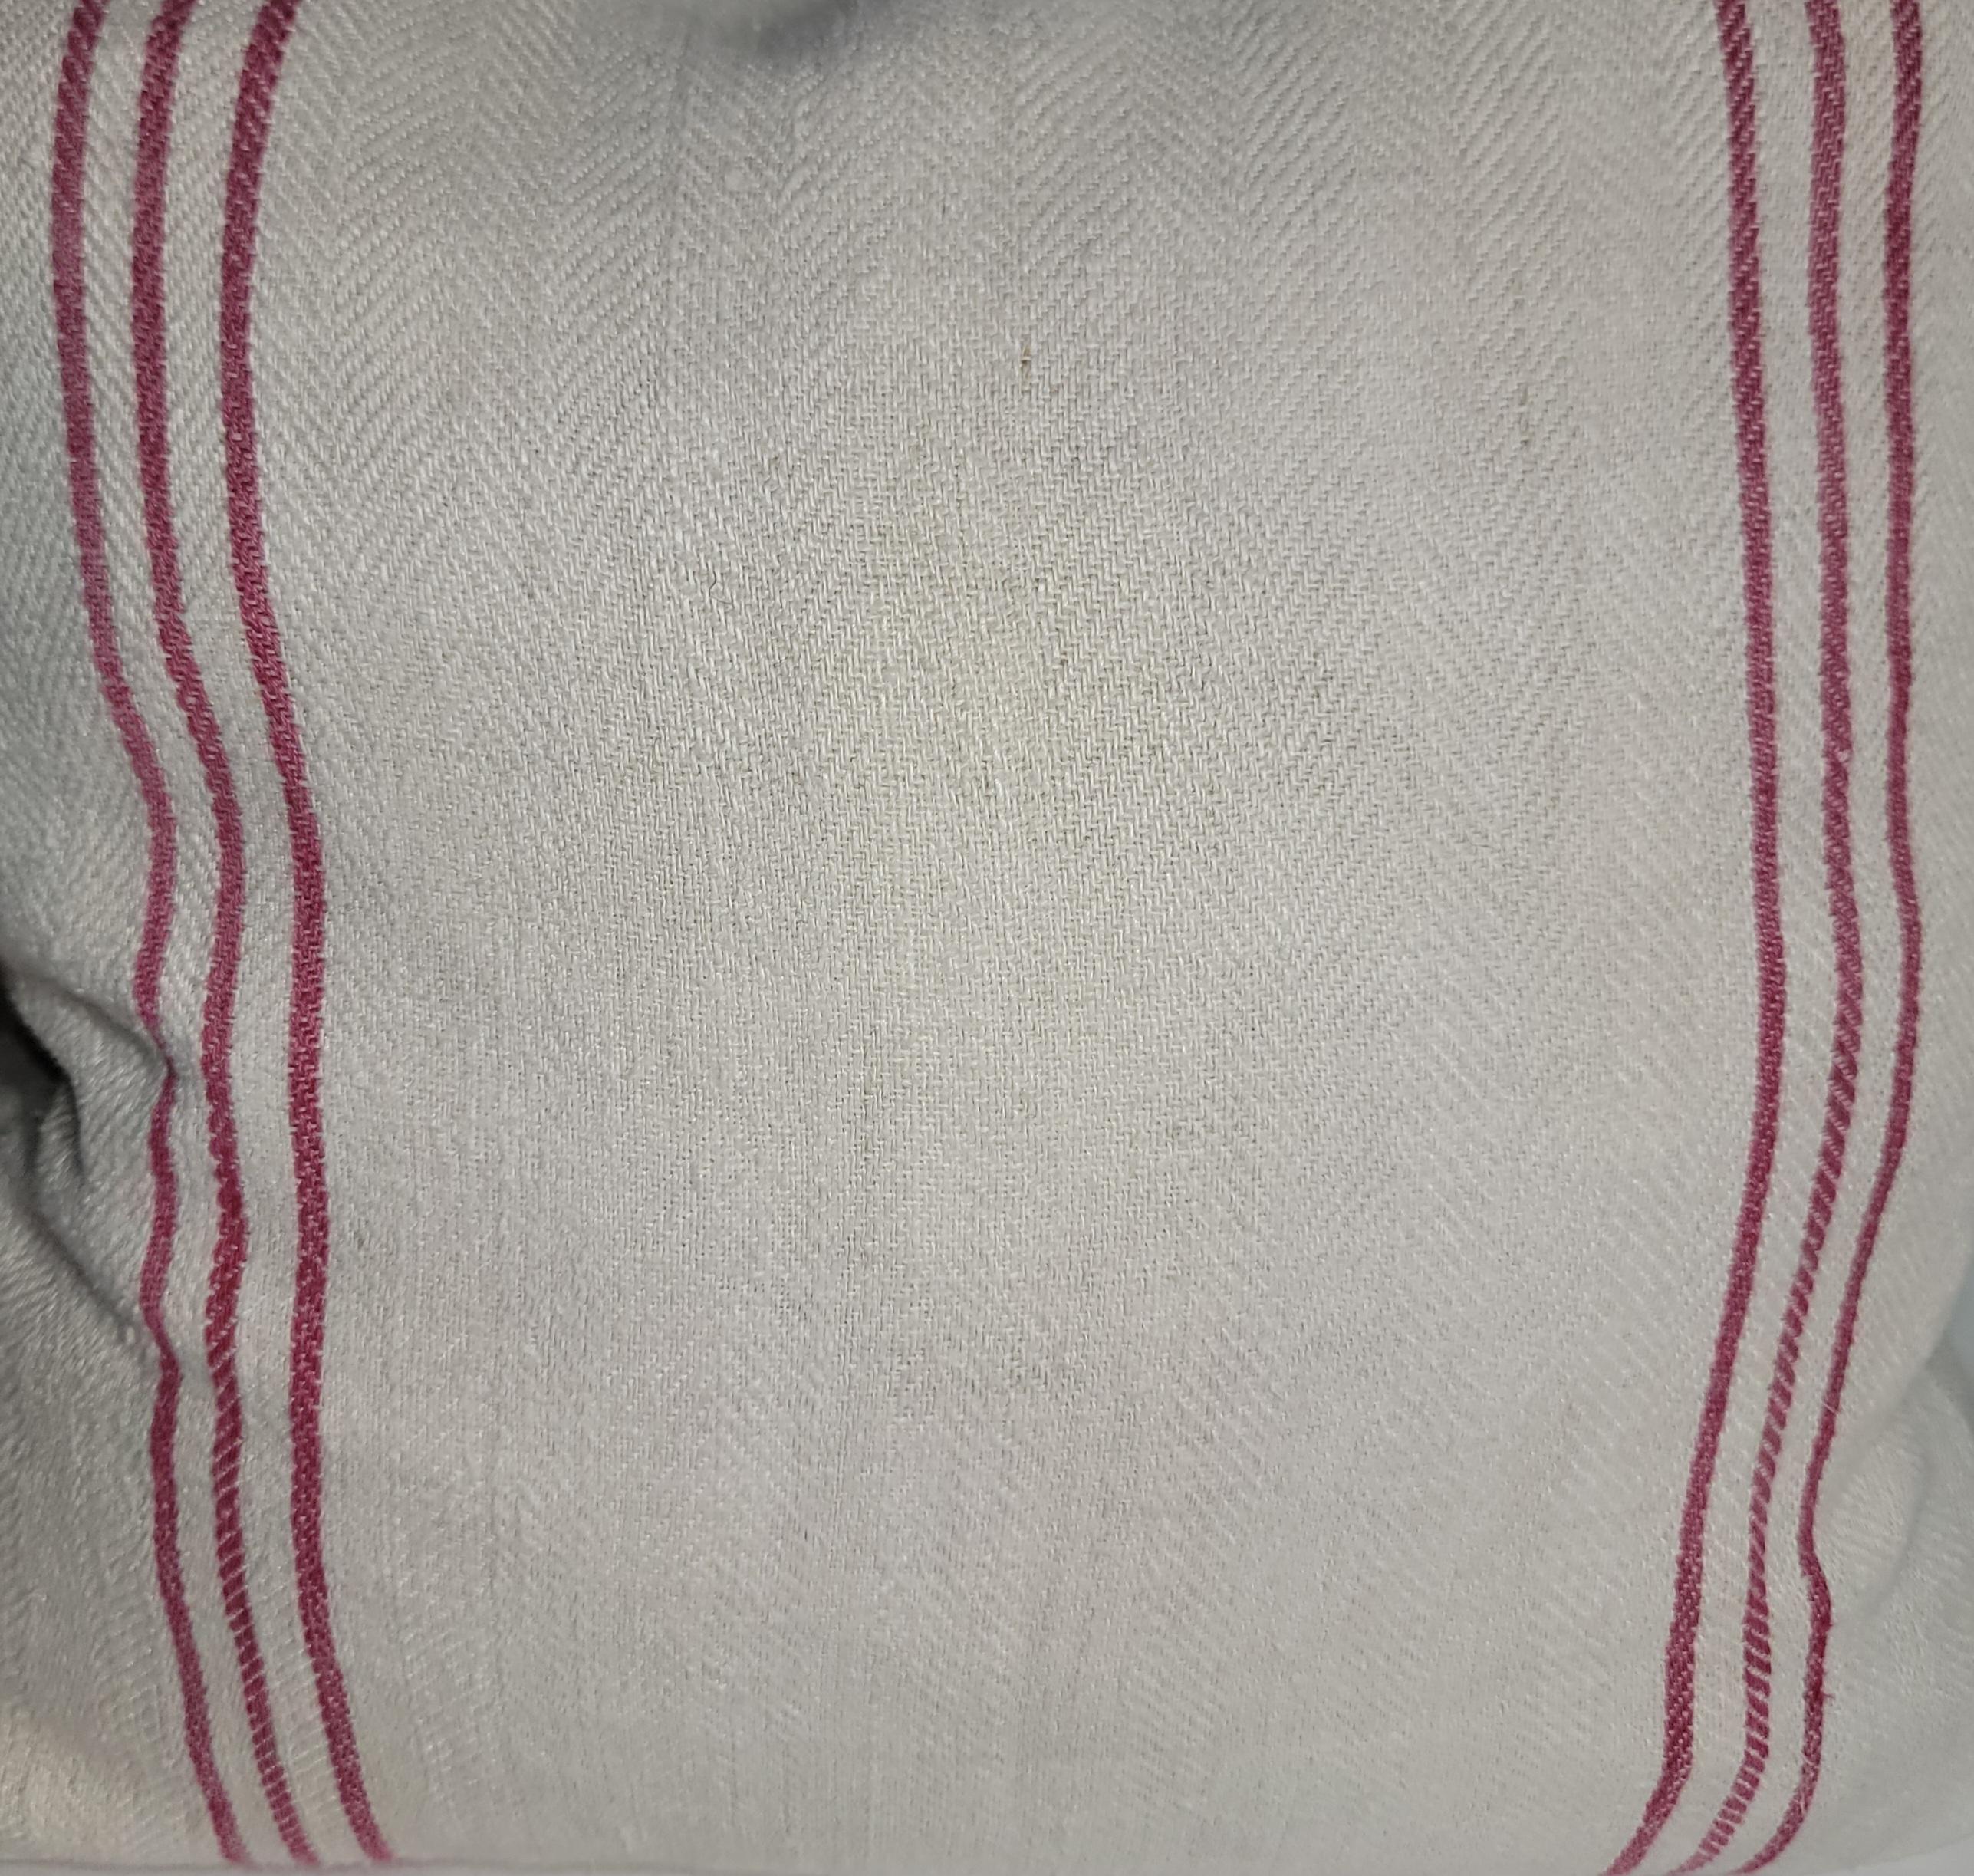 Oreillers double face en lin de coton rayé du 19e siècle. Ce magnifique lin présente de simples lignes rouges sur un côté de l'oreiller qui sont très attrayantes et le dos est un lin uni. Les draps ont été lavés par des professionnels et sont garnis